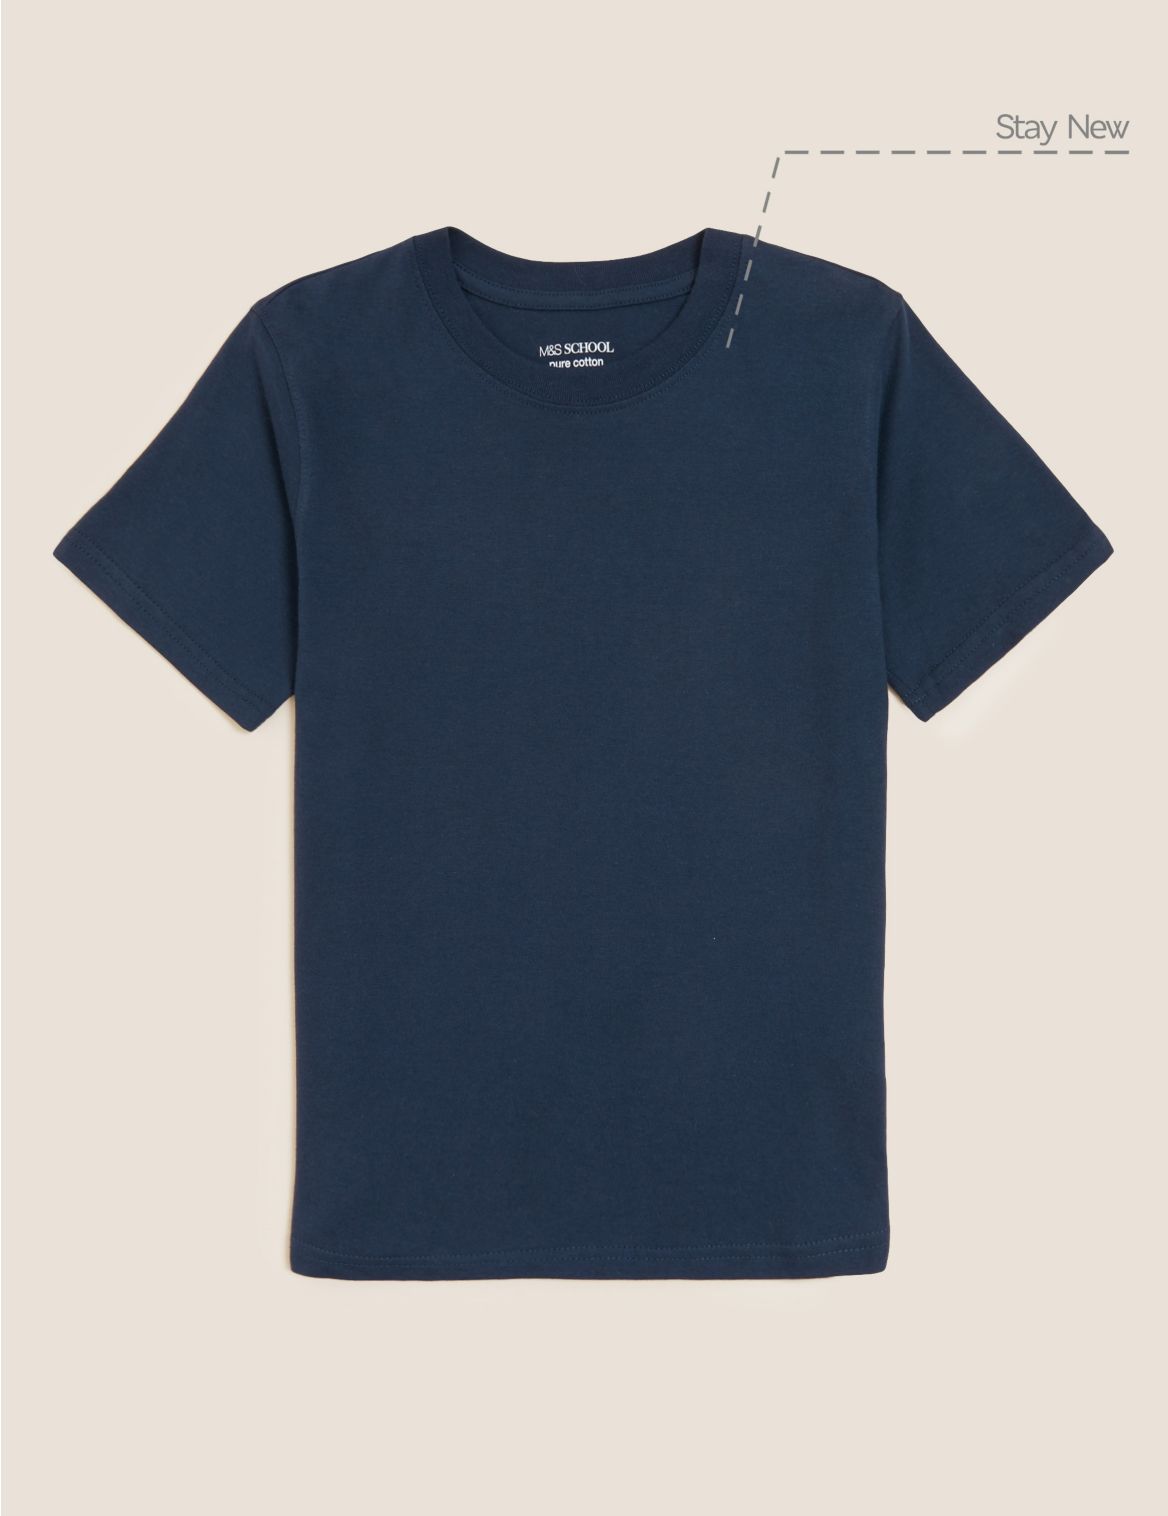 Unisex Pure Cotton T-Shirt navy